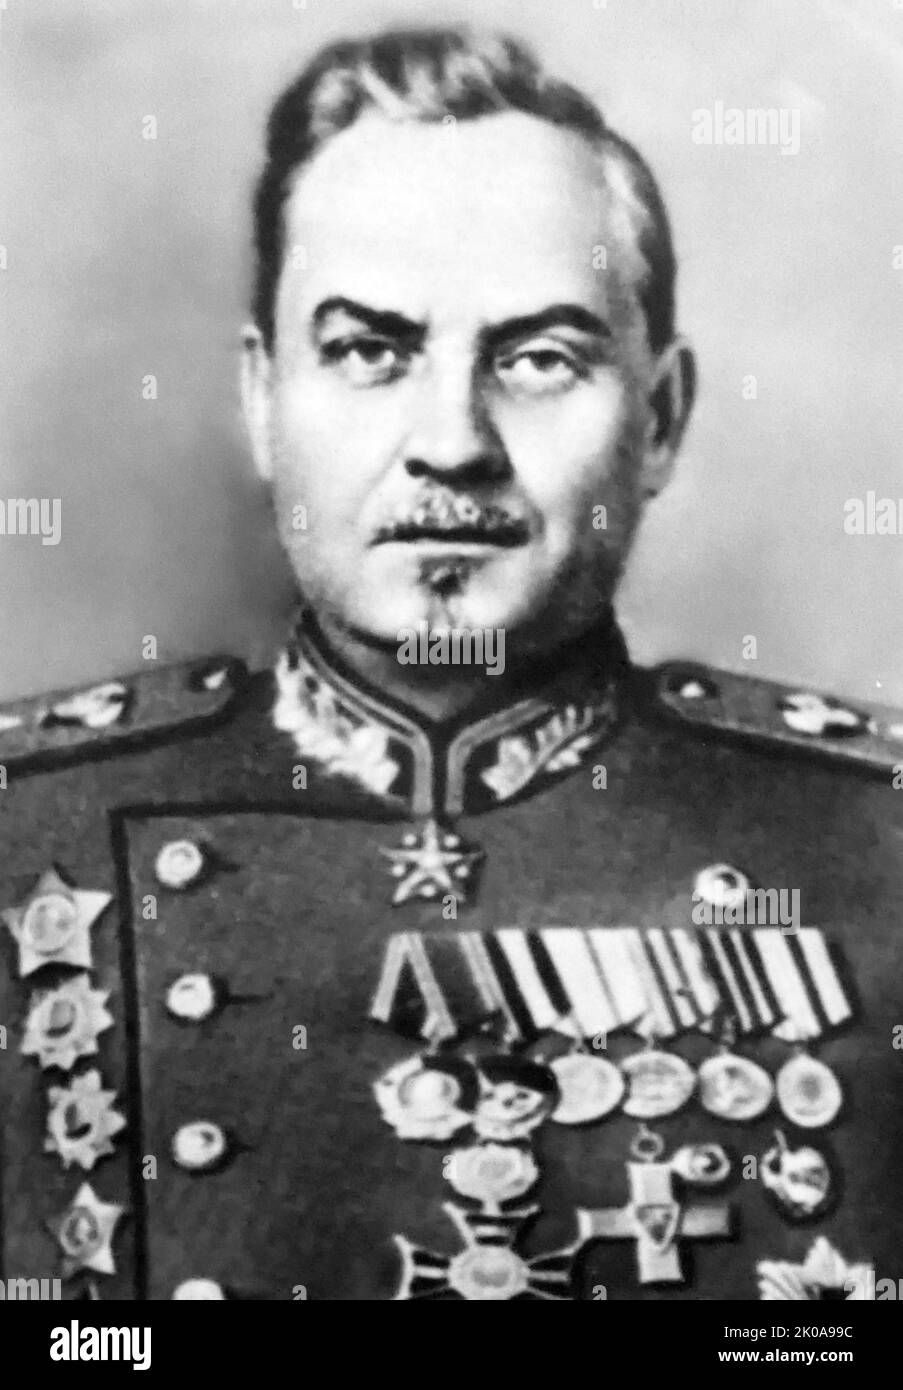 Nikolai Alexandrowitsch Bulganin (1895 - 1975), sowjetischer Politiker, der unter Nikita Chruschtschow als Verteidigungsminister (1953-1955) und Premierminister der Sowjetunion (1955-1958) diente, nach dem Dienst in der Roten Armee und als Verteidigungsminister unter Joseph Stalin. Stockfoto